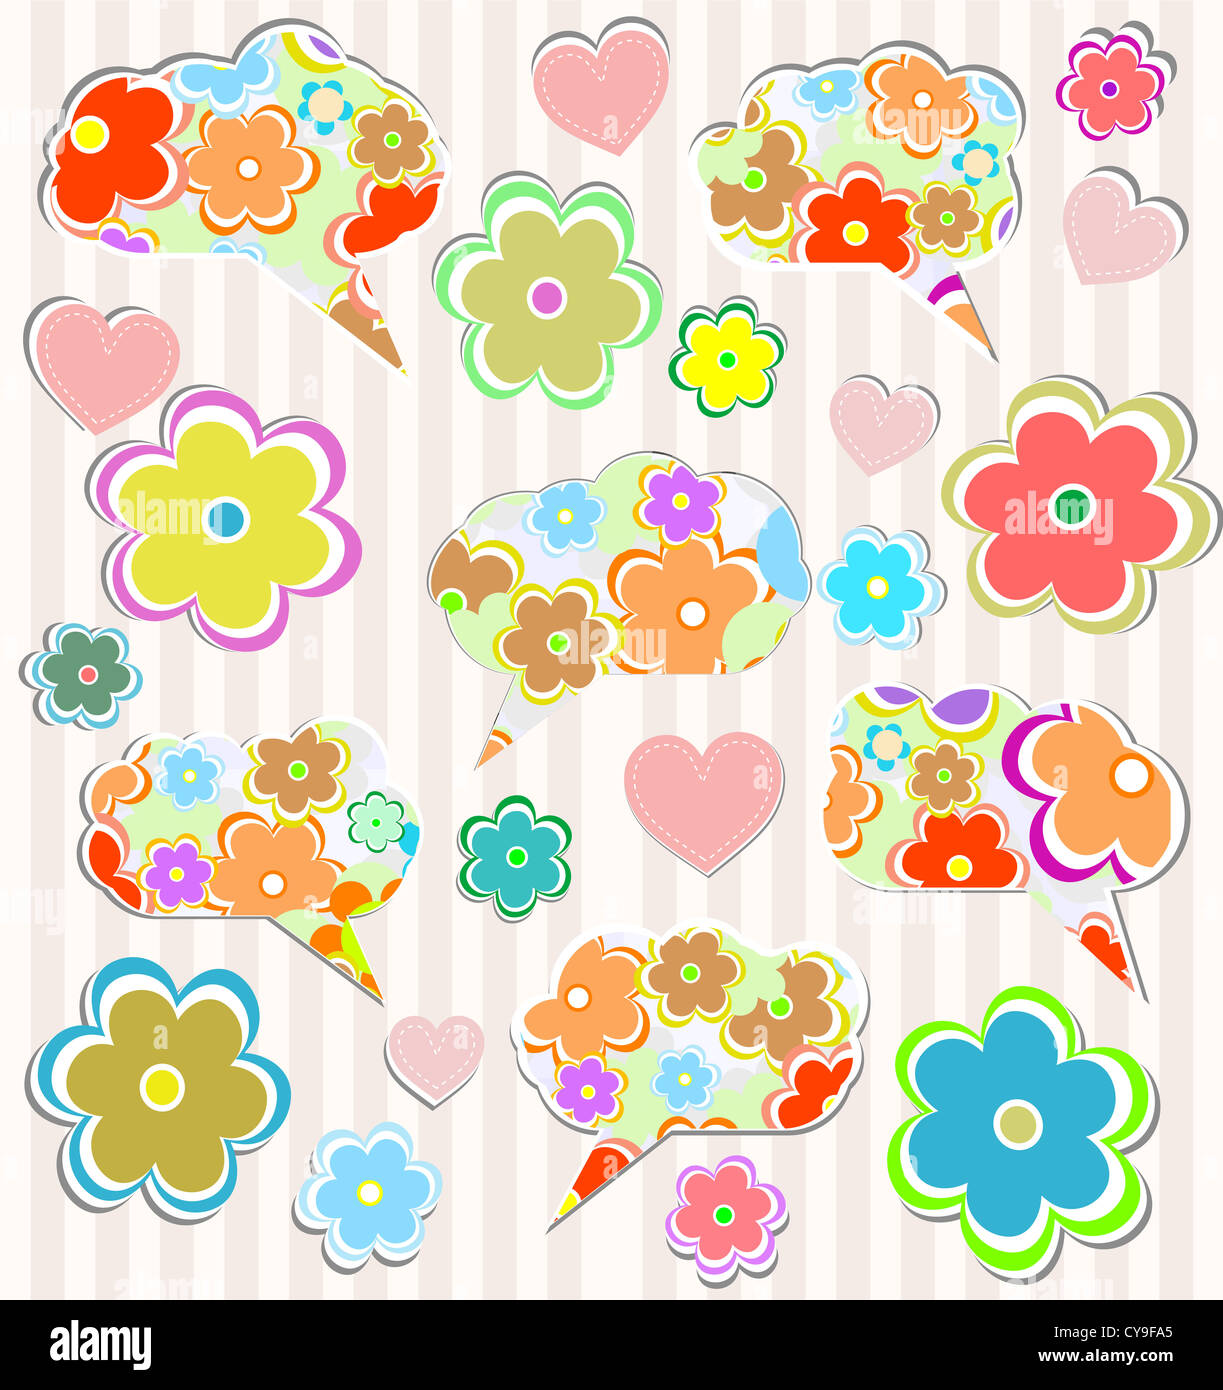 Résumé de l'ordinateur portable psychédélique doodles avec cœur et fleur sur fond papier ligné Banque D'Images